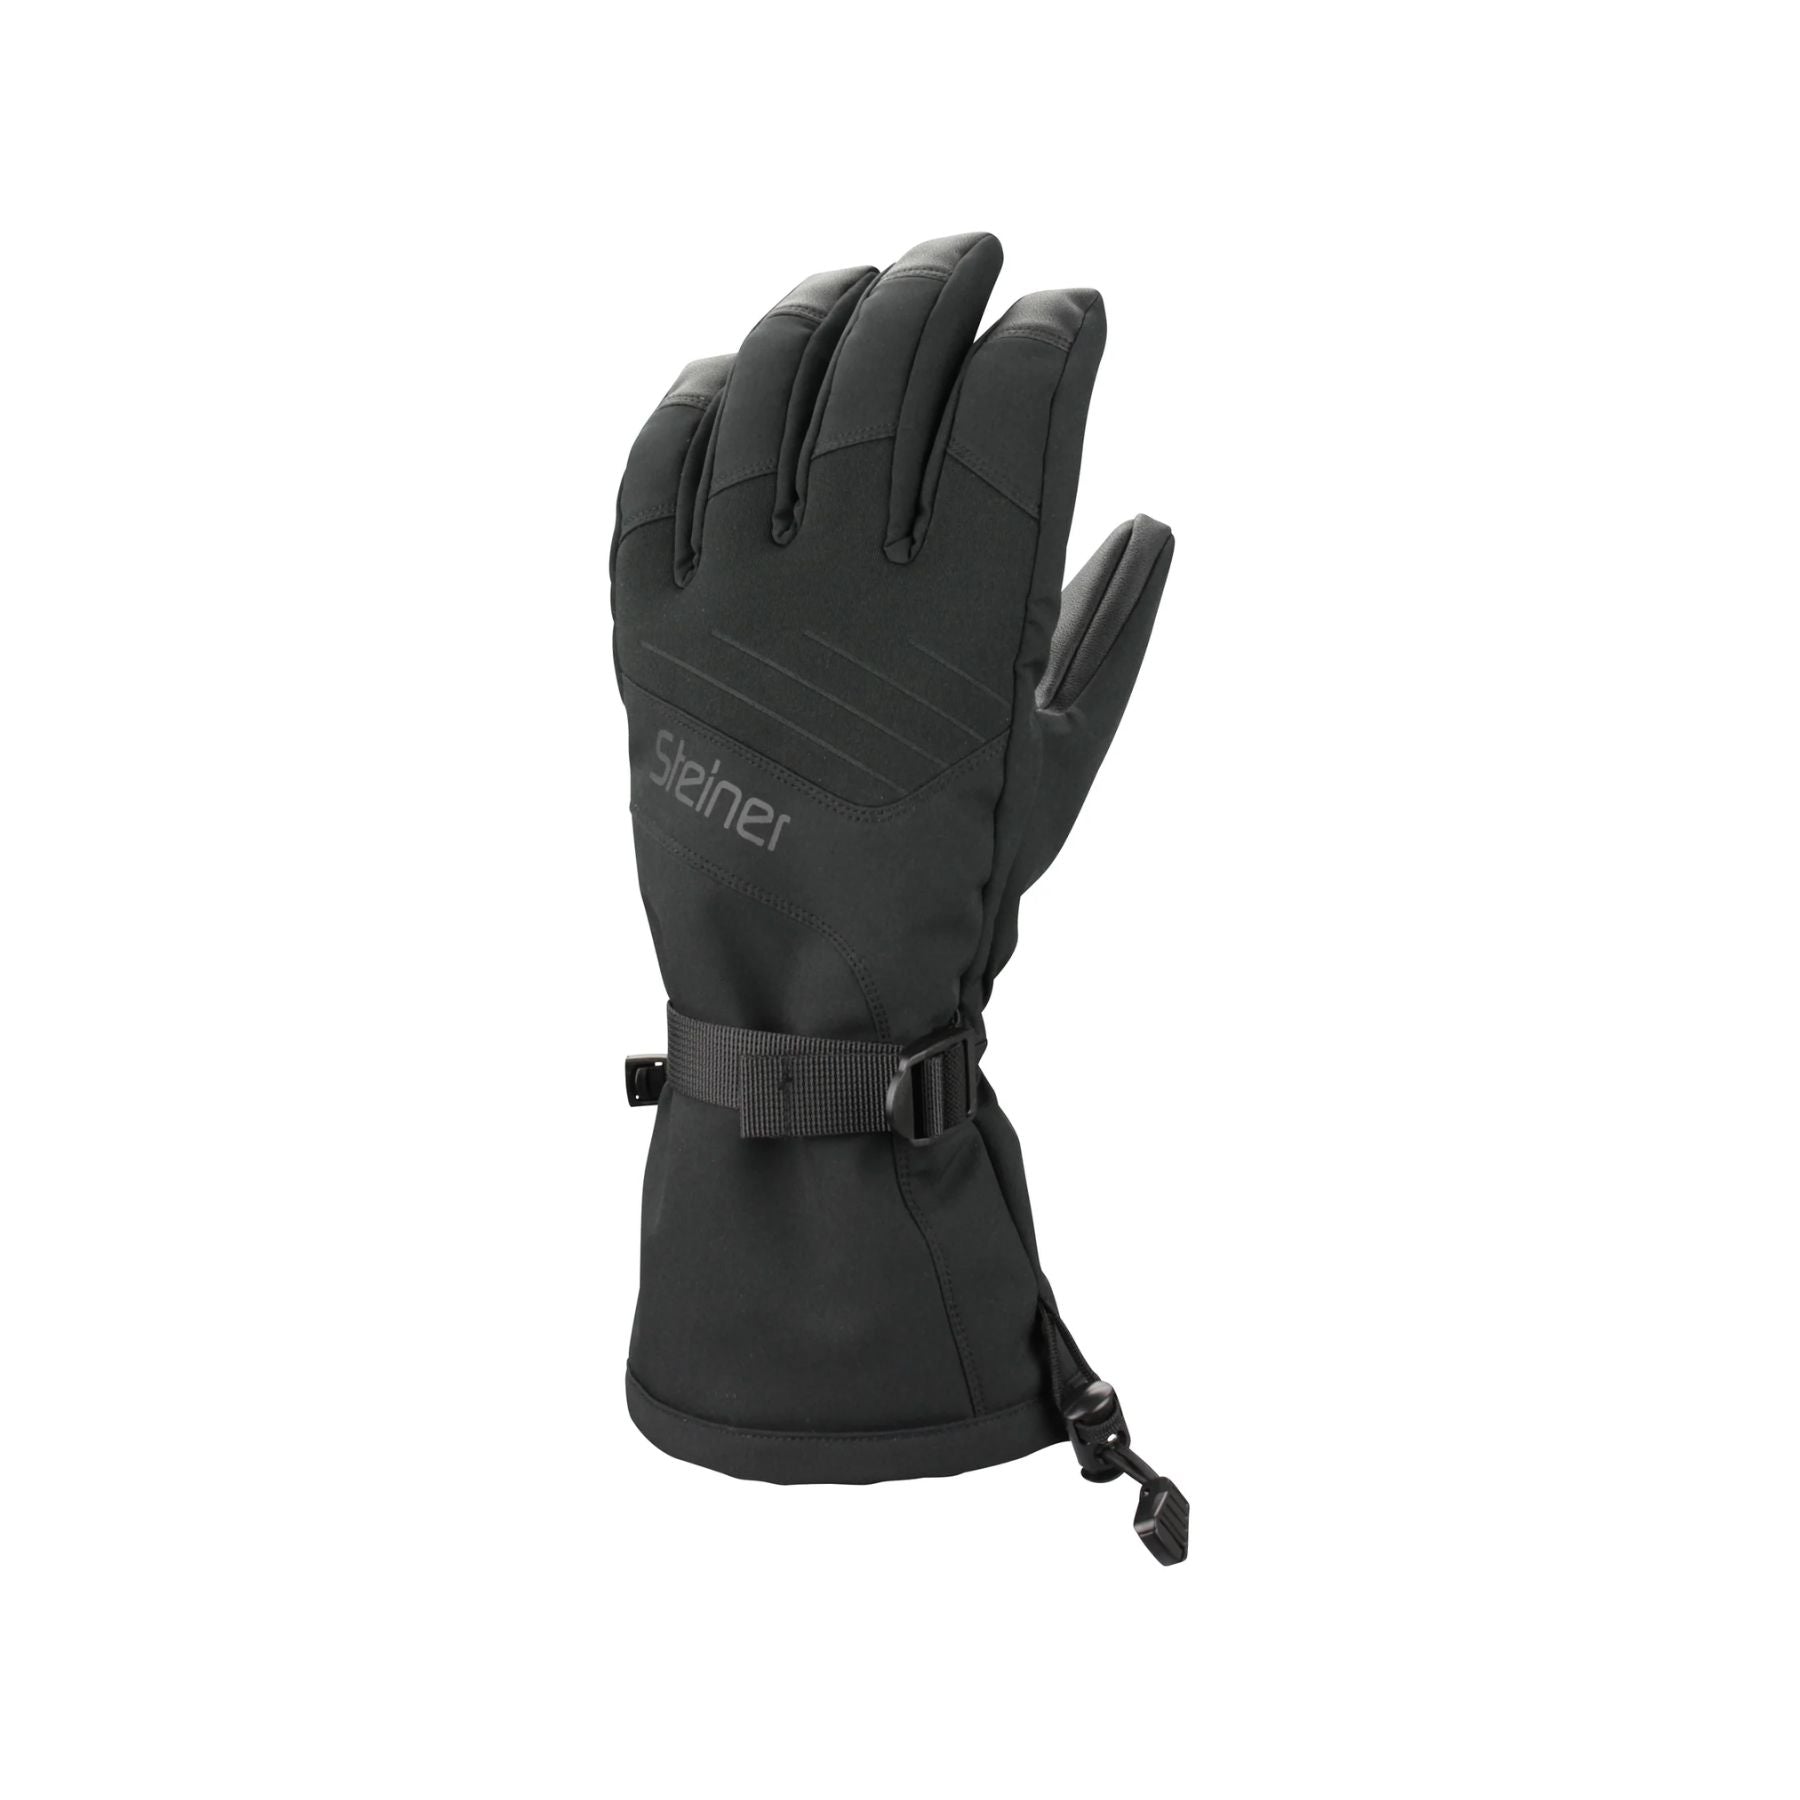 Steiner Women's Mountain Ski Glove in Black